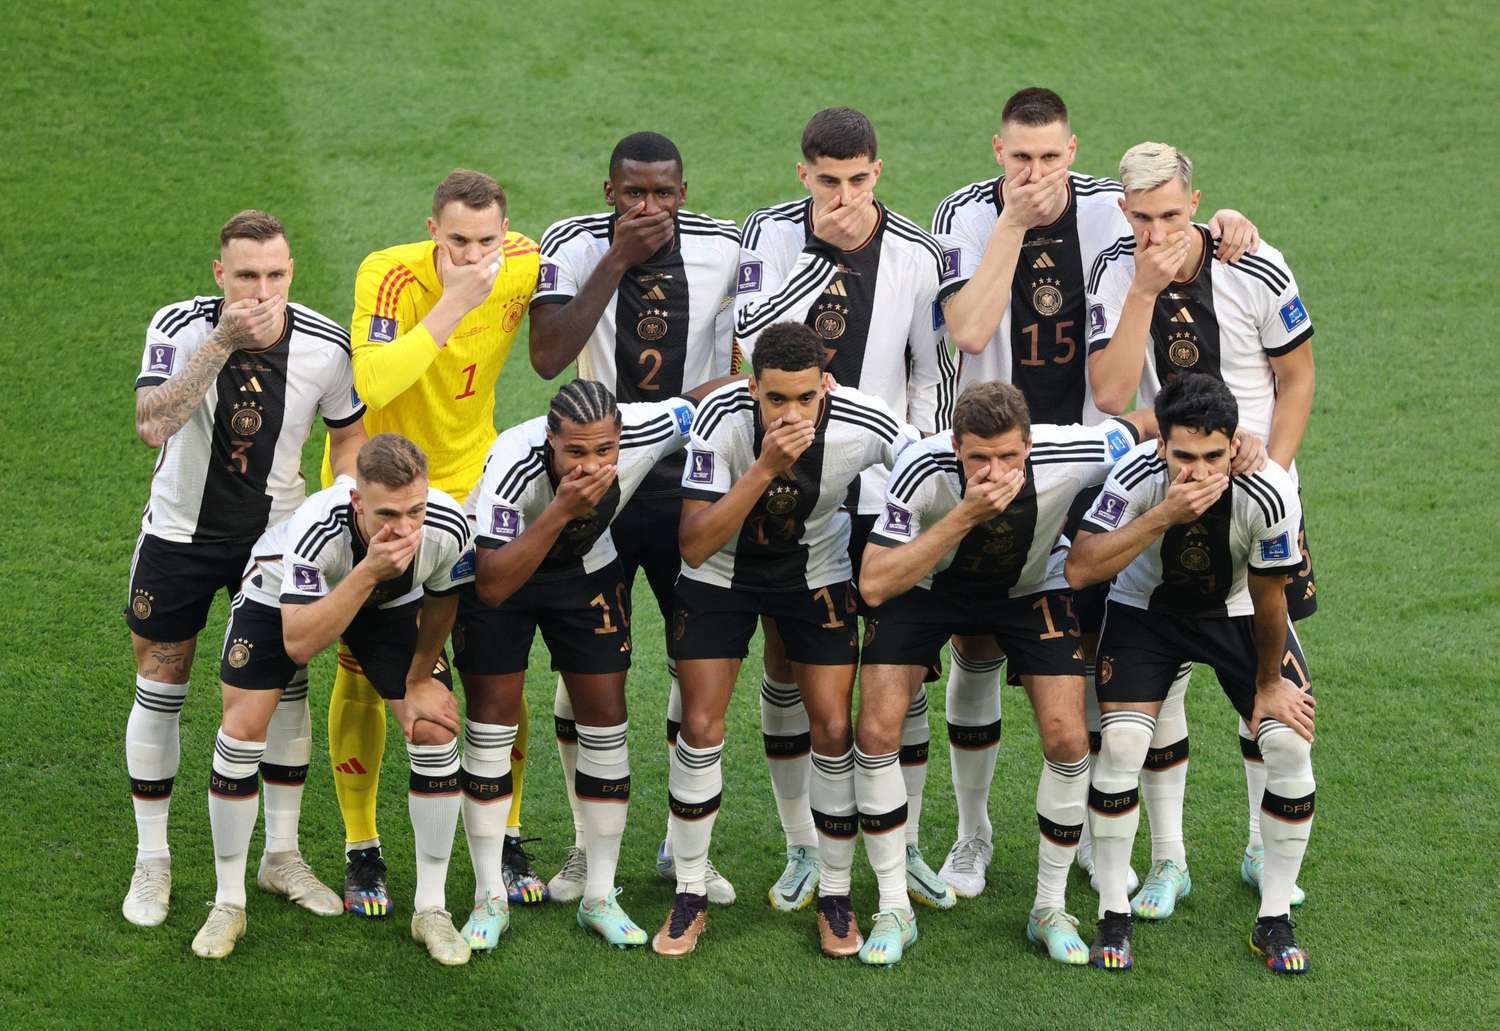 Alemania desafío a la FIFA: los jugadores se taparon la boca por no poder usar el brazalete LGTB+